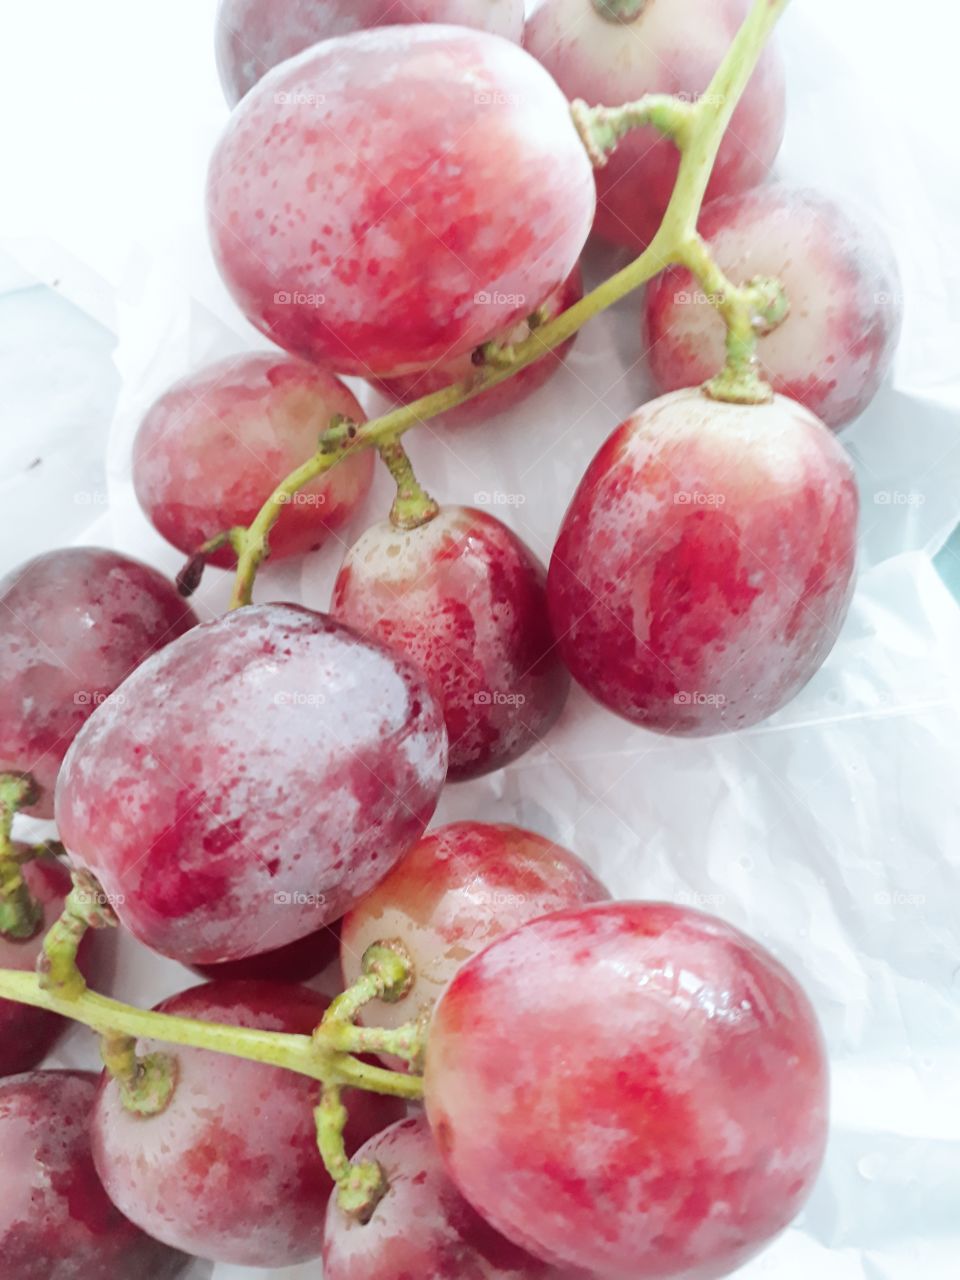 la uva peruana del cual es procesada en vino.